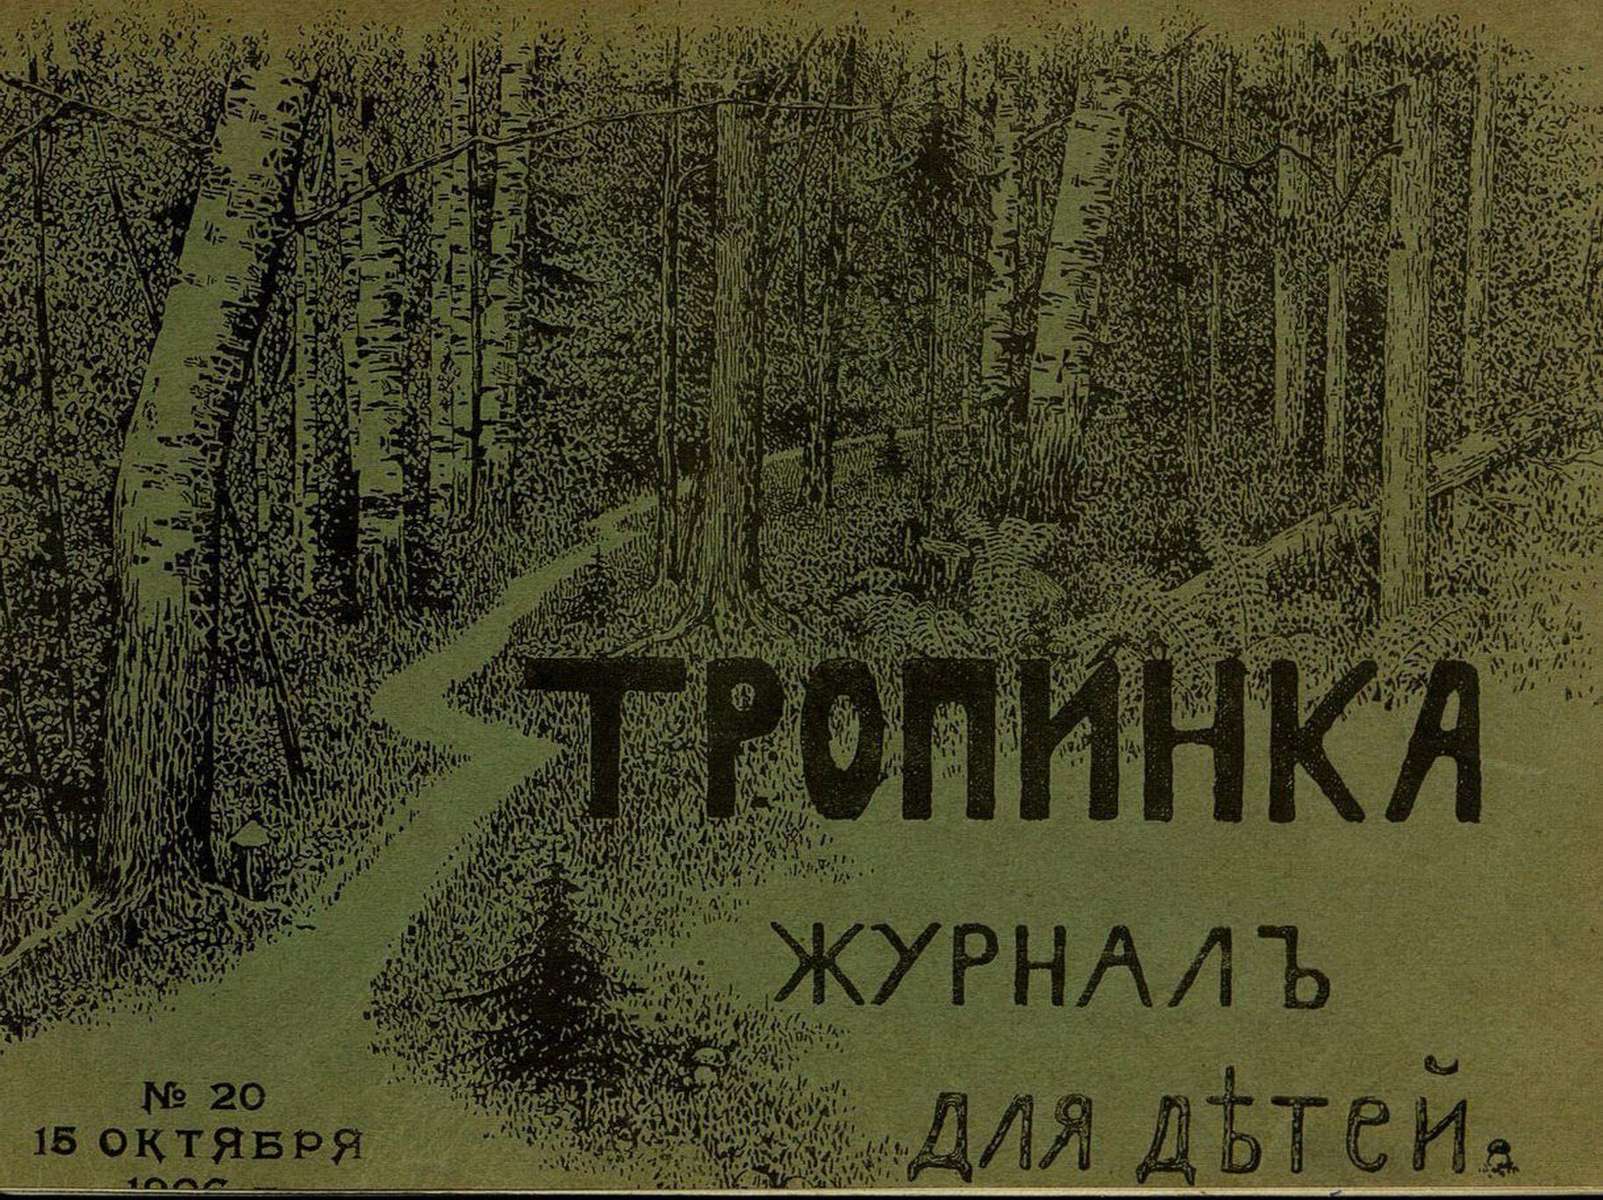 Тропинка_1906_№ 20. 15 октября: журнал для детей - 1906